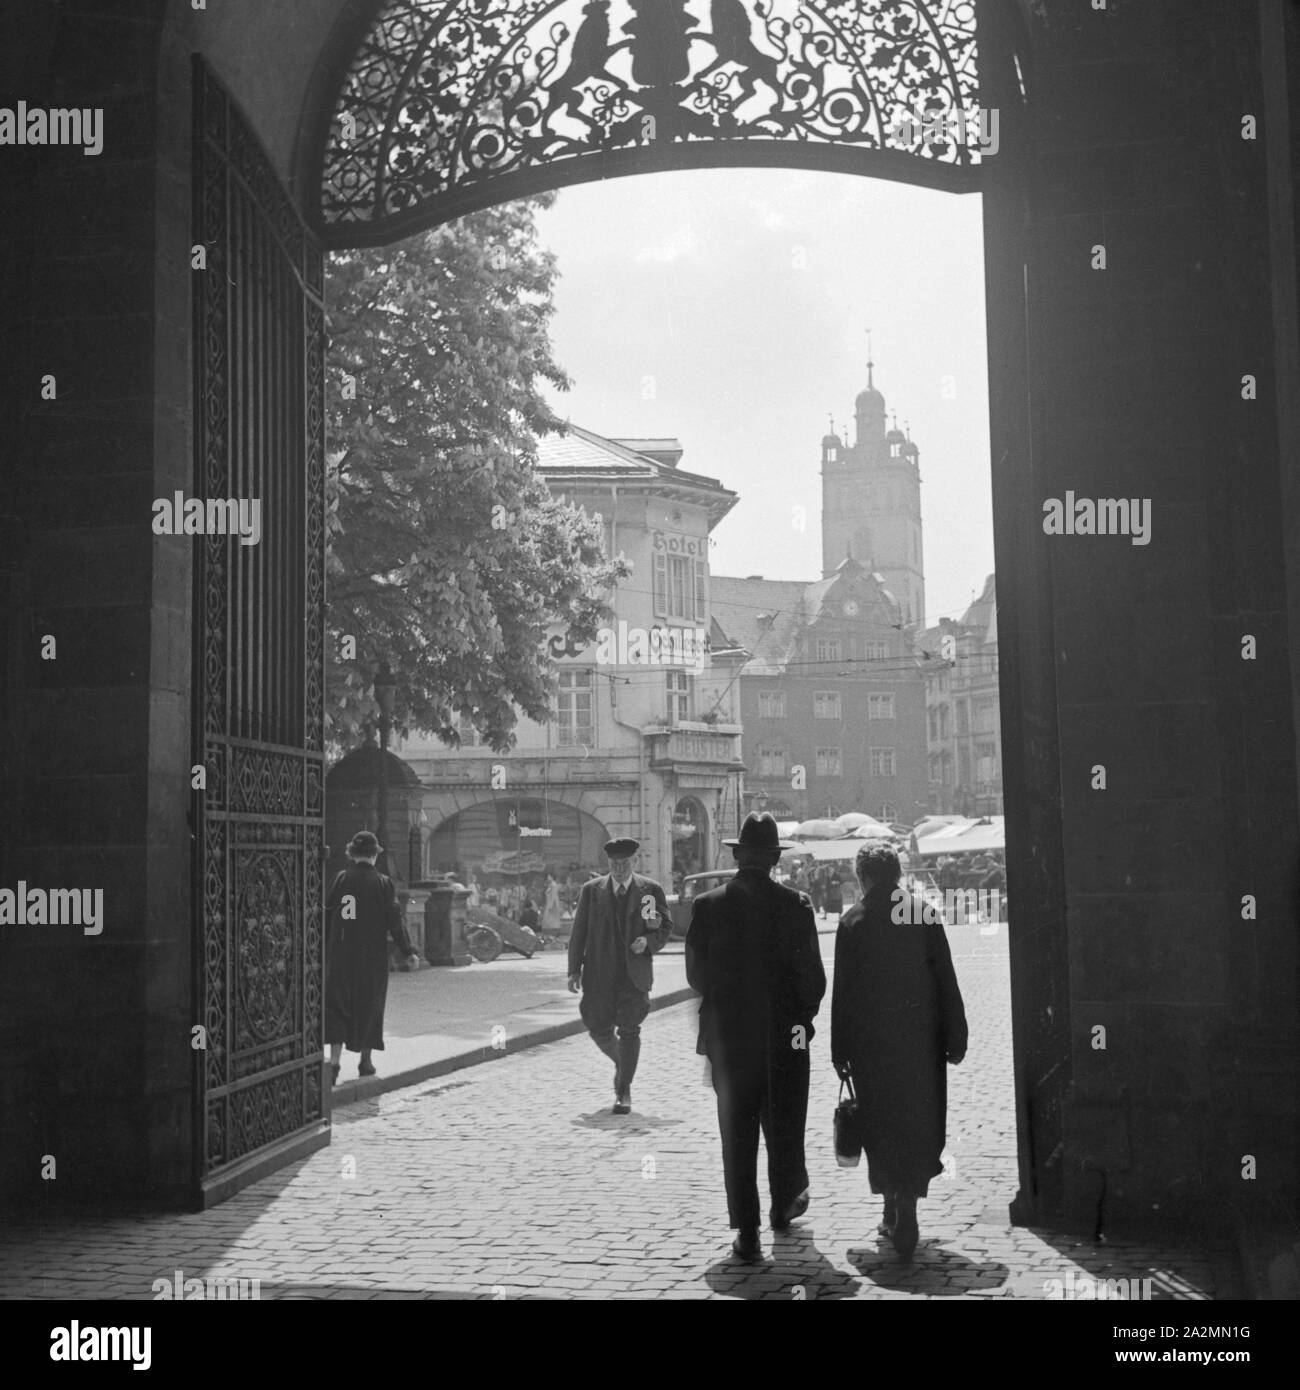 Am Portal zum Schloss in Darmstadt, gegenüber von Hotel Deuster "Schilller Eck", Deutschland 1930er Jahre. At the entrance gate of Darmstadt castle, Germany 1930s. Stock Photo